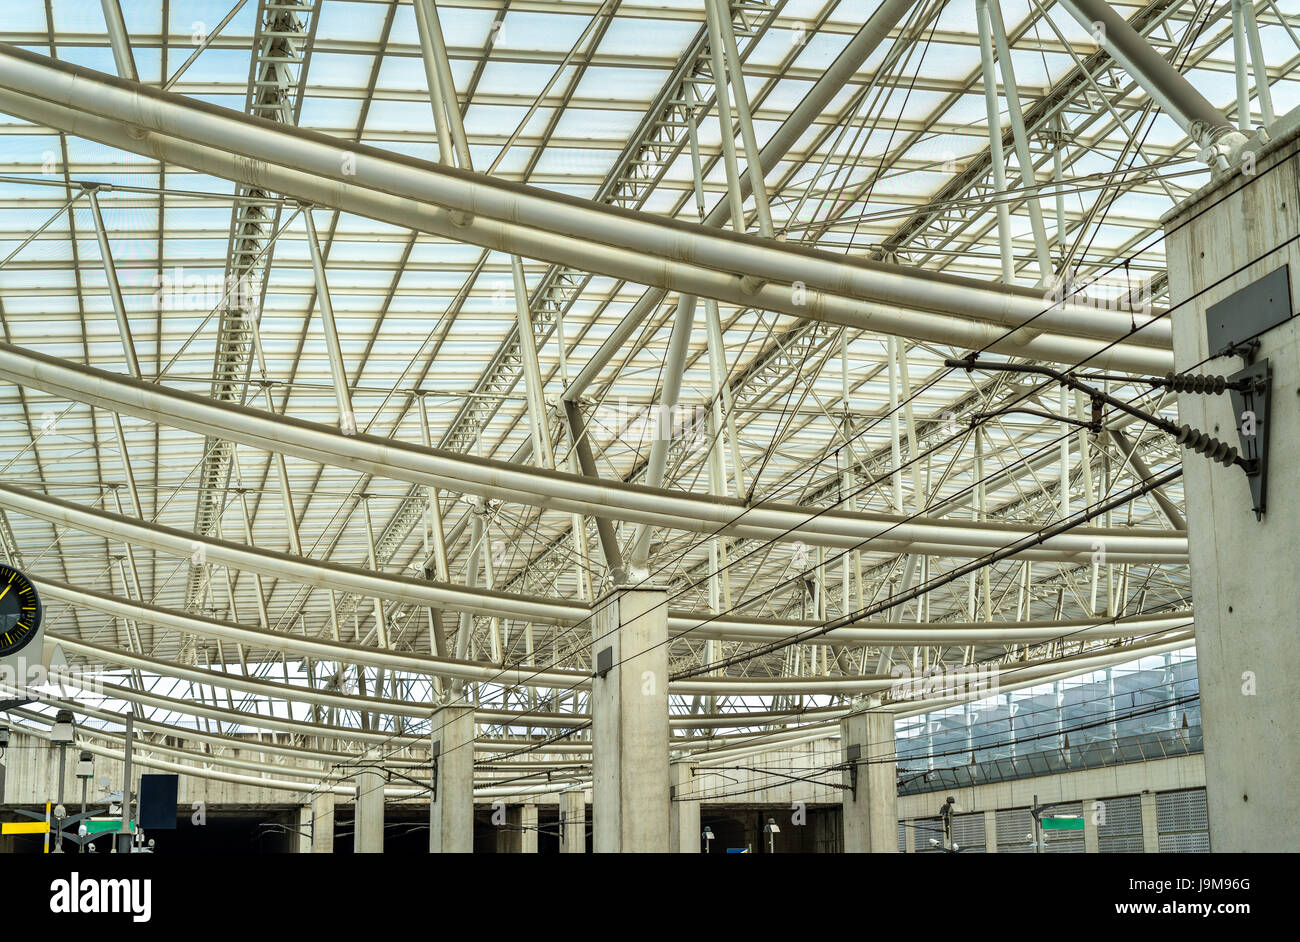 Aeroport Charles de Gaulle 2 TGV, une gare à l'aéroport principal près de Paris Banque D'Images